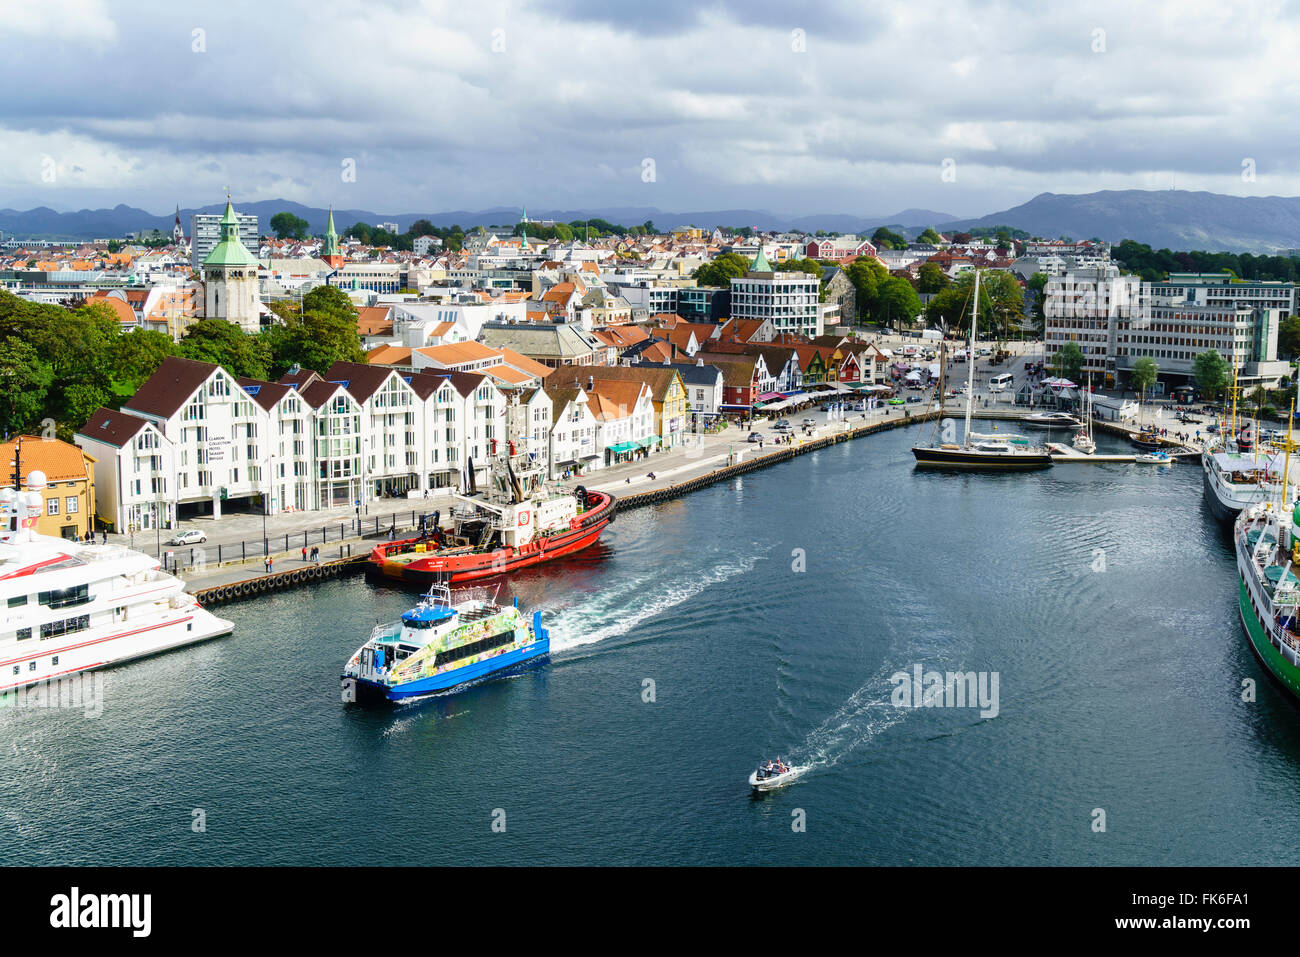 Vagen, Stavanger, l'arrière-port de Stavanger, Norvège, troisième ville et centre de l'industrie pétrolière du pays, la Norvège Banque D'Images